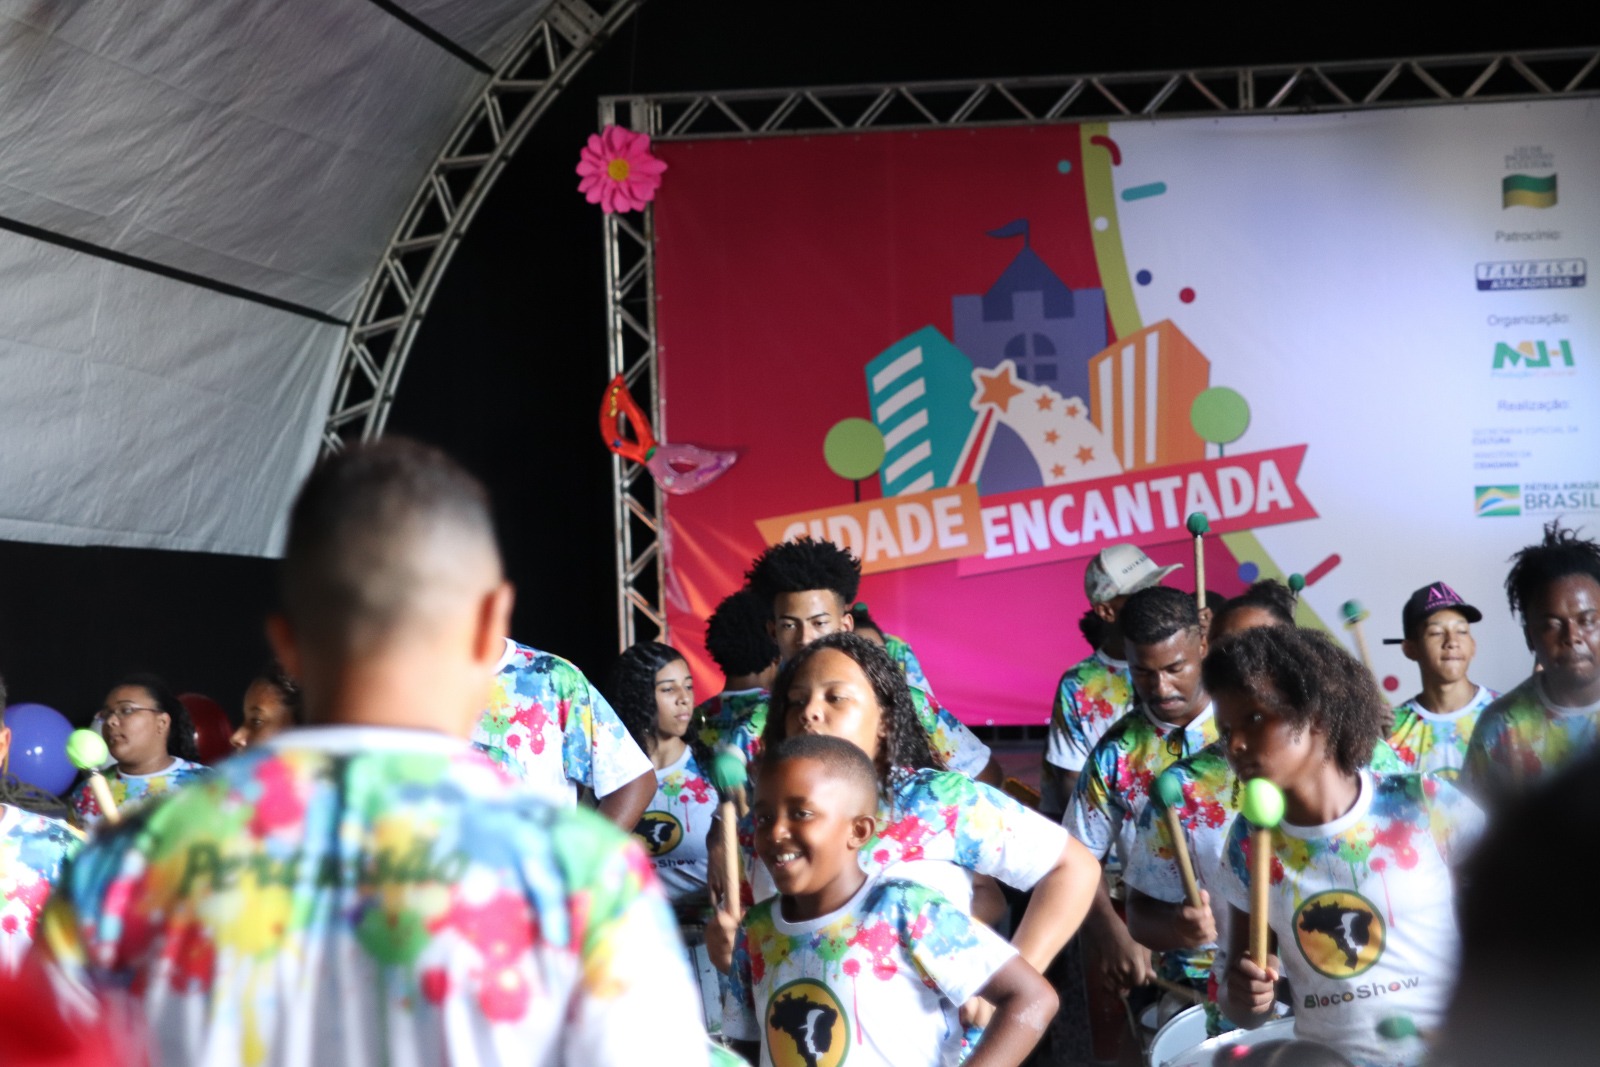 Cidade Encantada chega a Contagem em clima de pré-carnaval com atividades gratuitas para toda a família